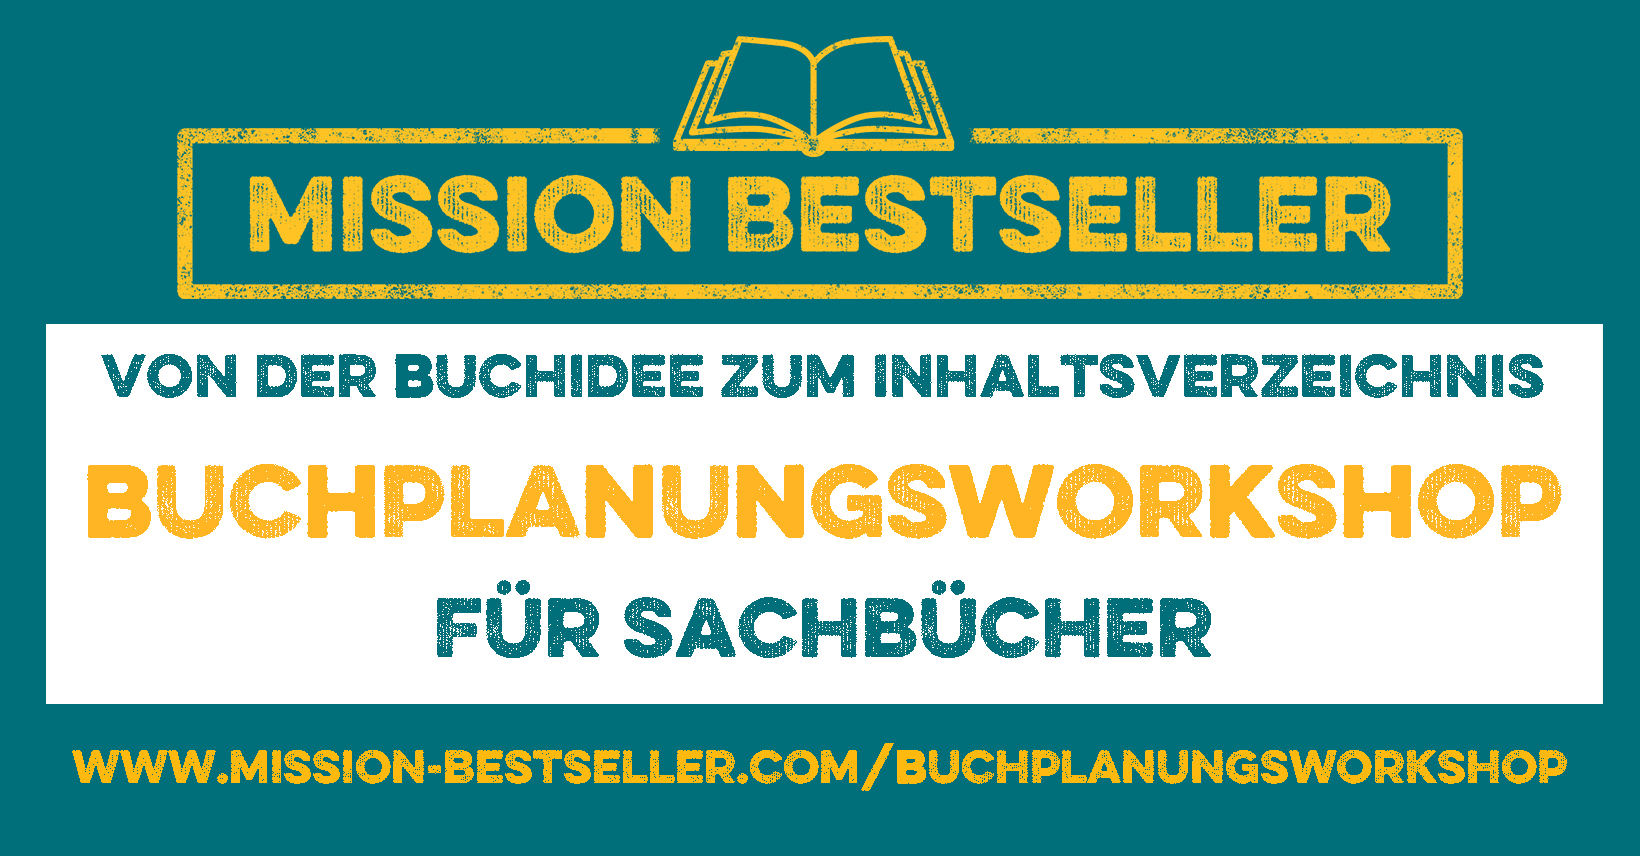 Mission Bestseller Logo und text: Von der Buchidee zum Inhaltsverzeichnis - Buchplanungsworkshop für Sachbücher